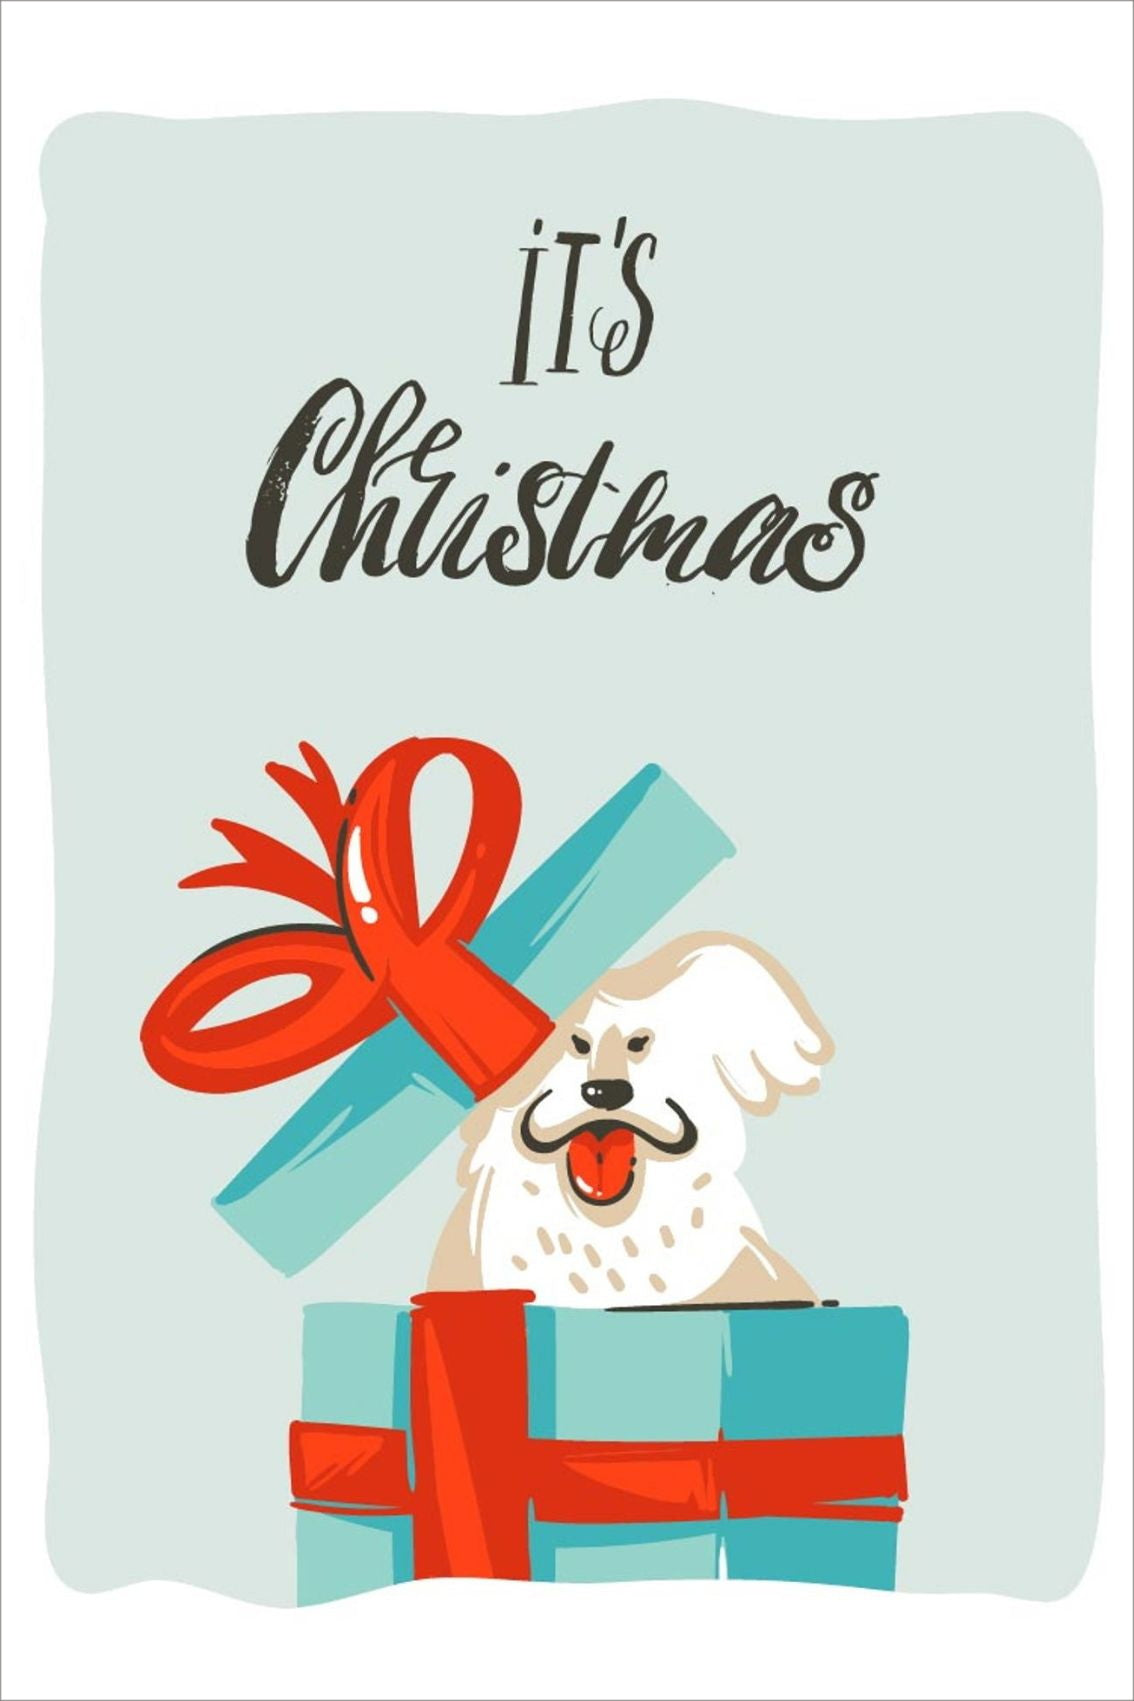 Minimalistiske cartoon julekort tegnet for hånd. Motiv av en hund i en julepakke.